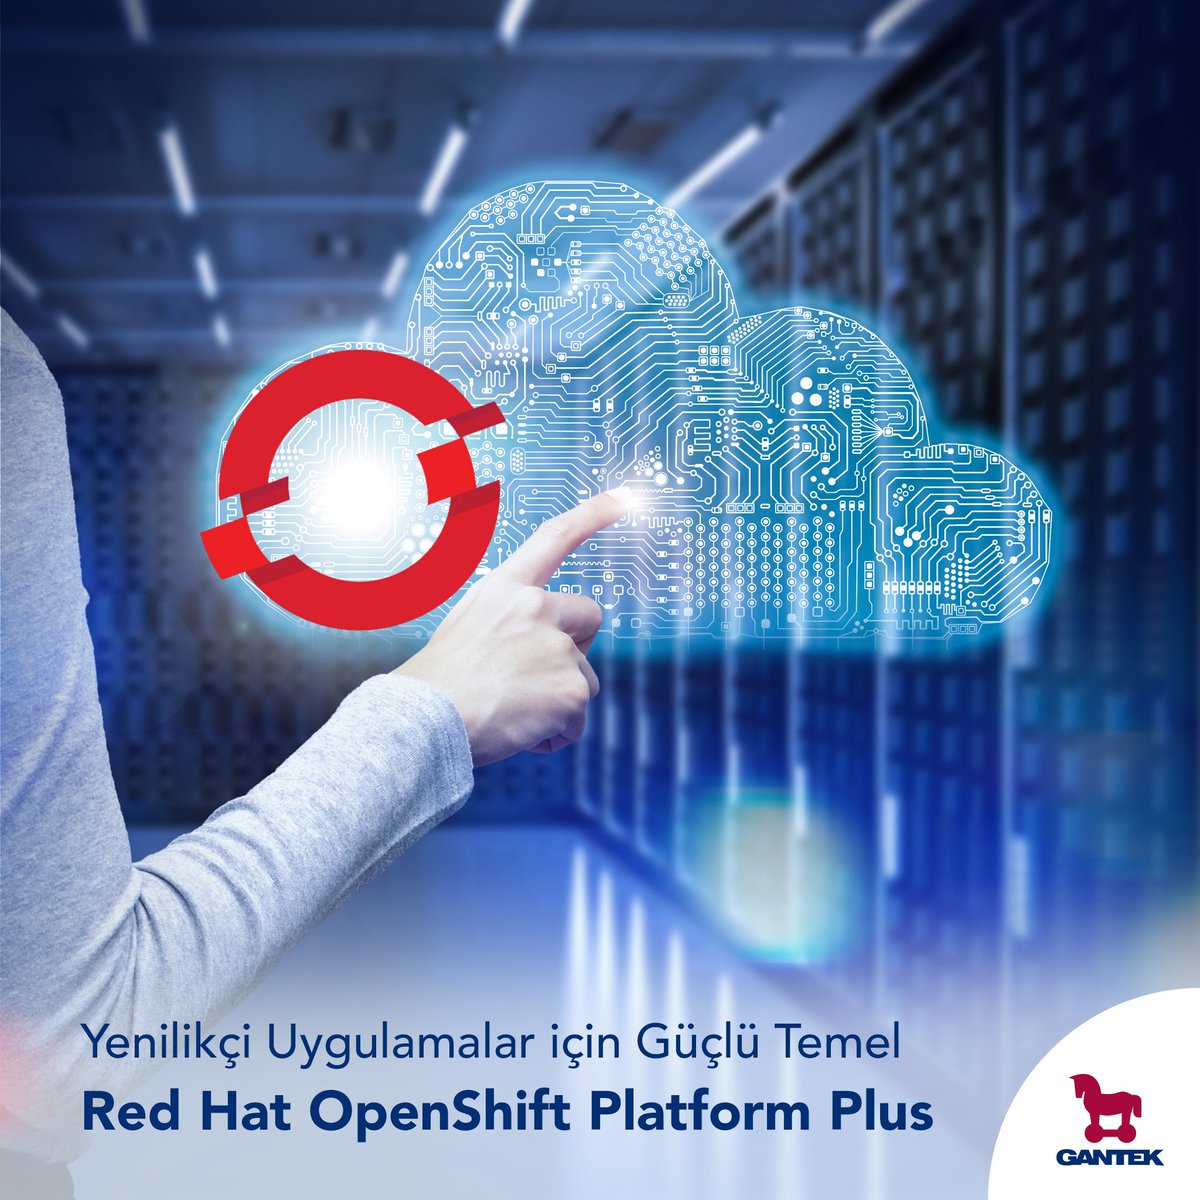 Yenilikçi Uygulamalar için Güçlü Temel!
Red Hat OpenShift Platform Plus'ın sağladığı kapsamlı özelliklerle, uygulama geliştirmede sınırları aşın.

#Gantek #RedHat #OpenShiftPlatform